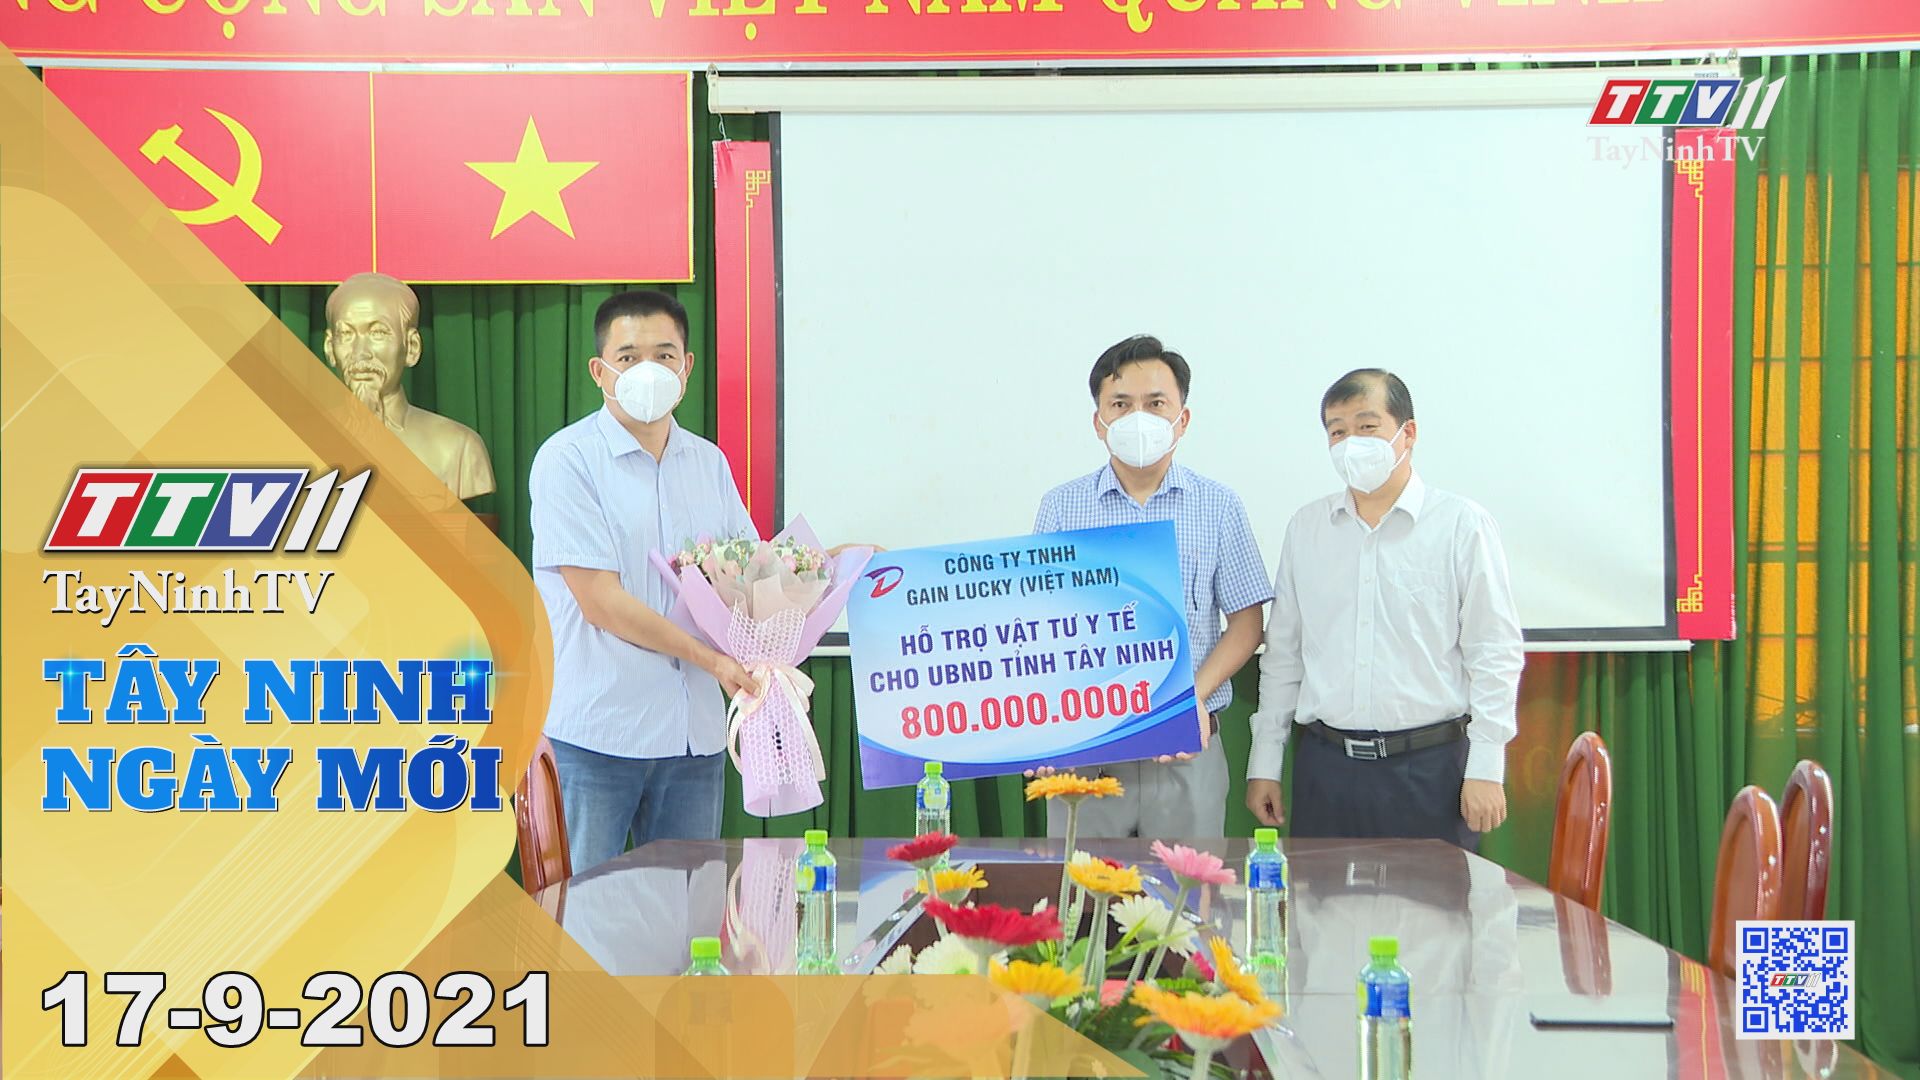 Tây Ninh Ngày Mới 17-9-2021 | Tin tức hôm nay | TayNinhTV